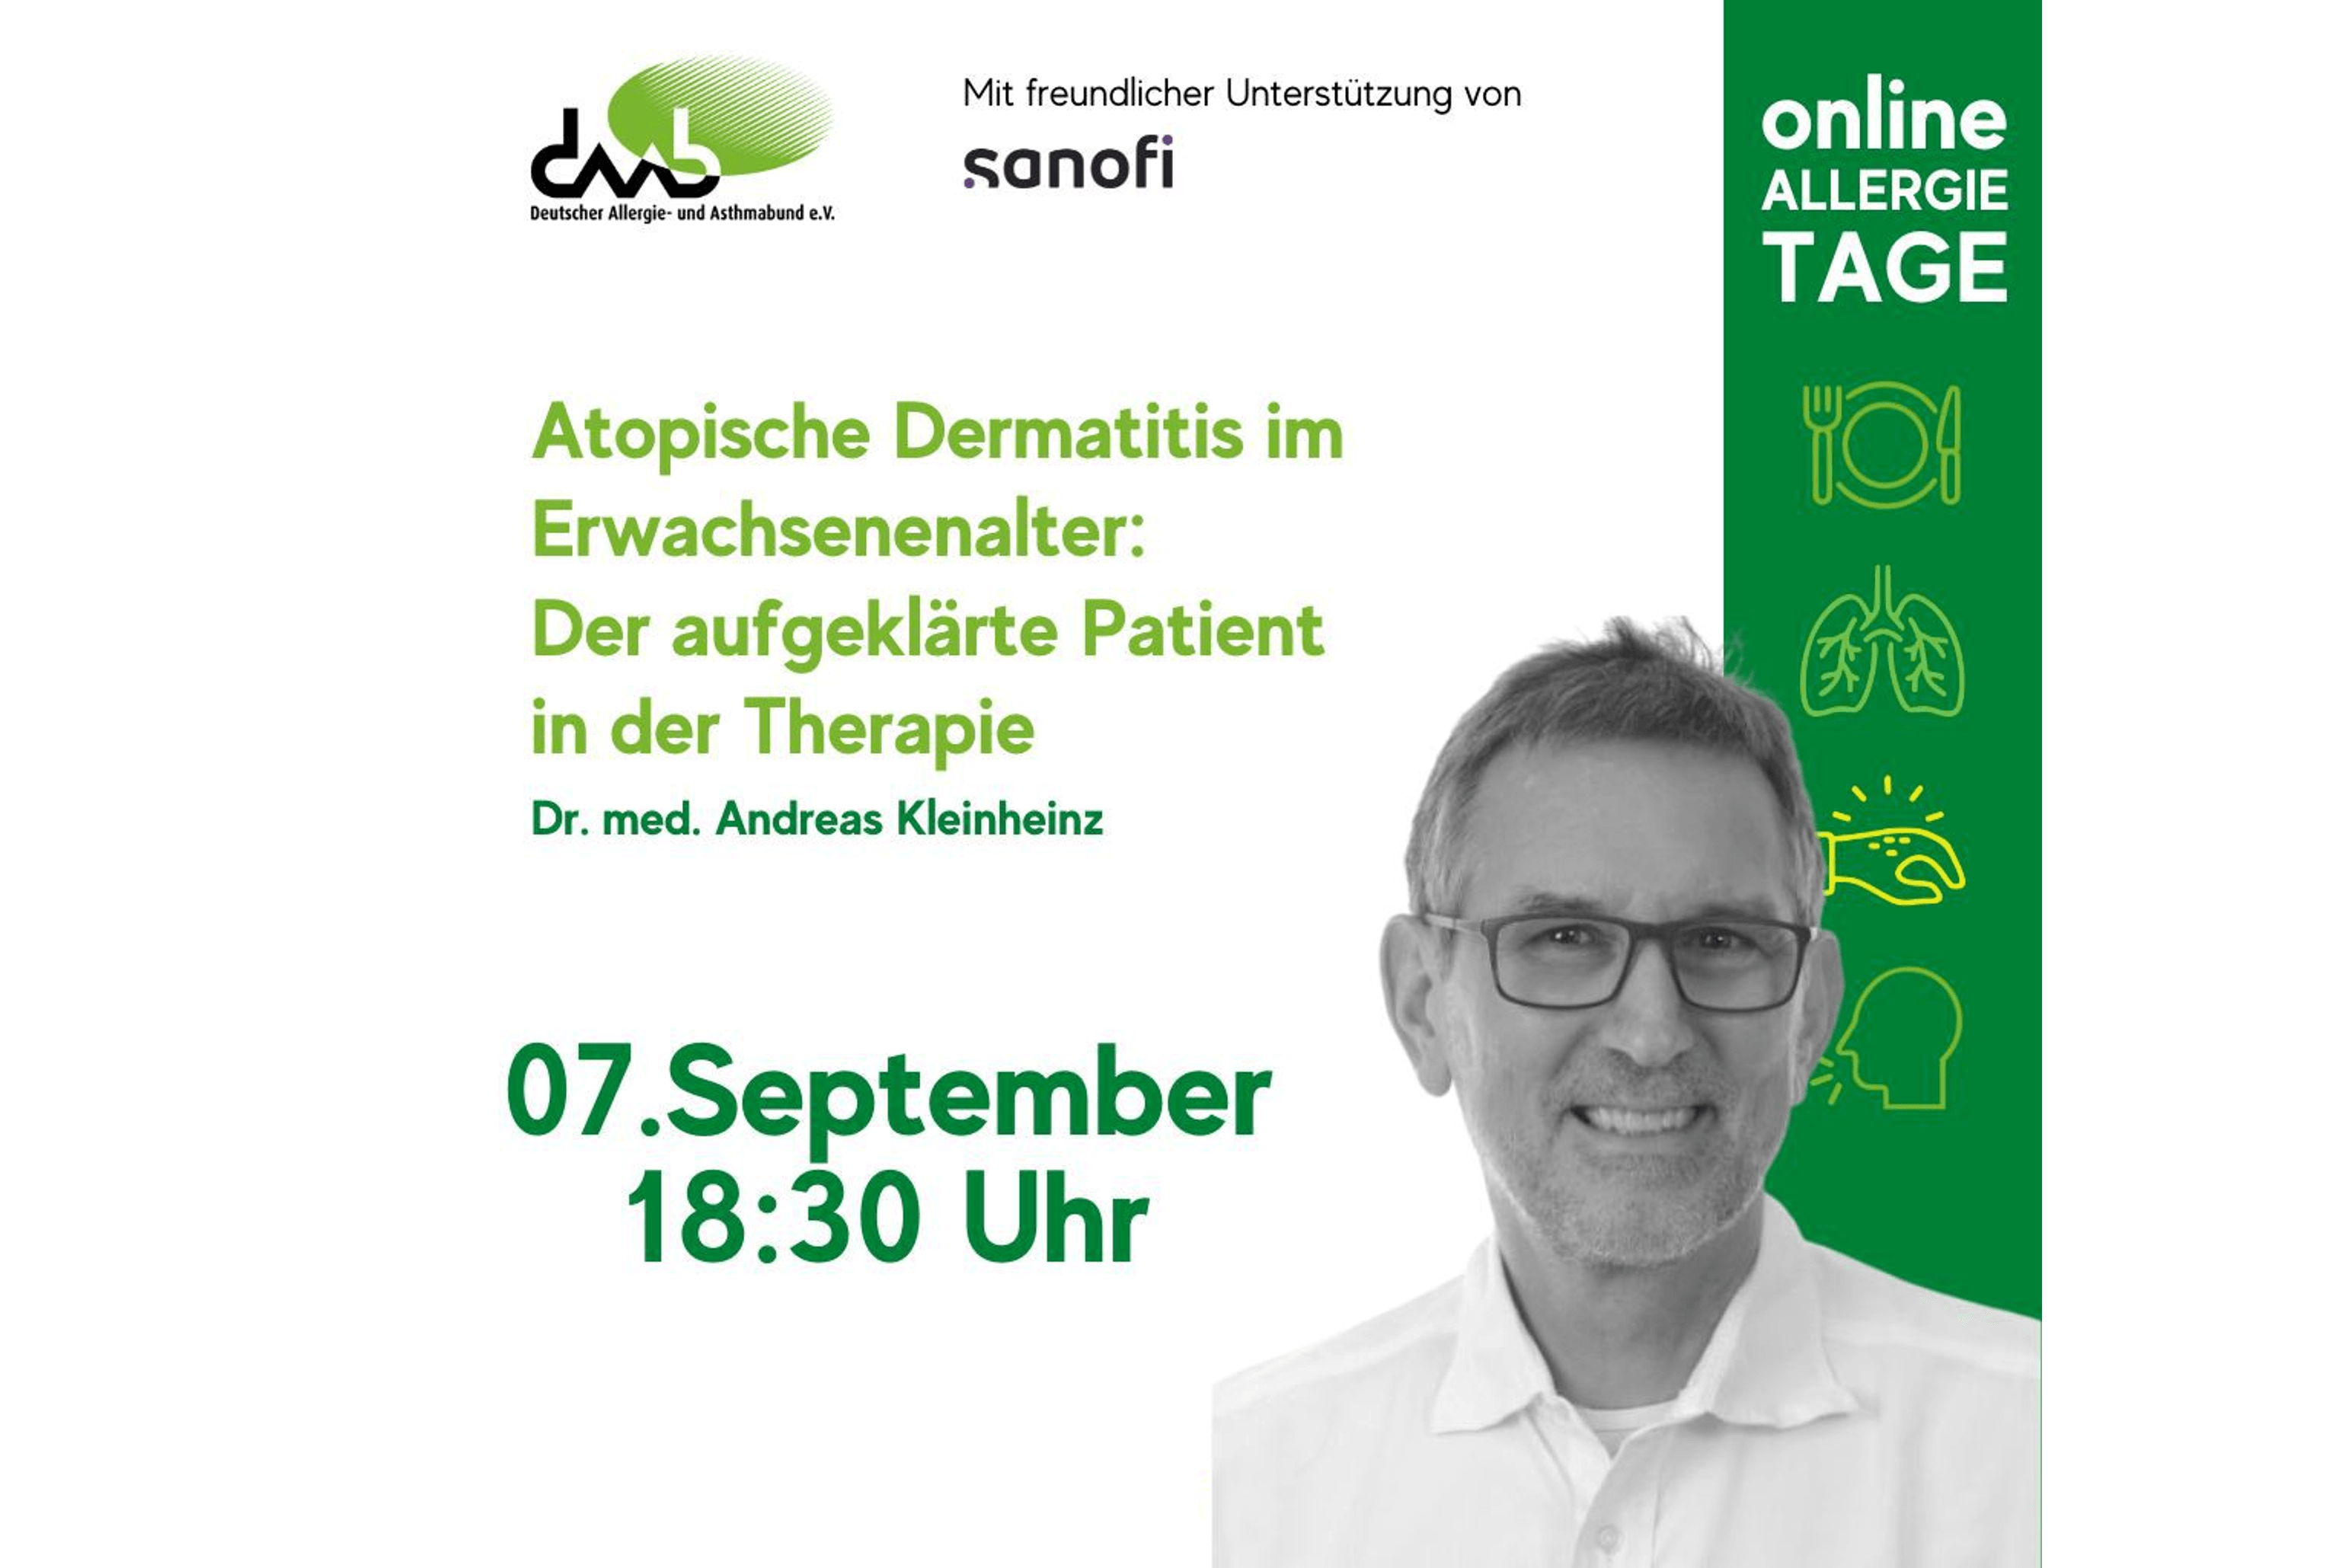 Vortragsankündigung mit Dr. med. Andreas Kleinheinz zu Atopischer Dermatitis im Erwachsenenalter